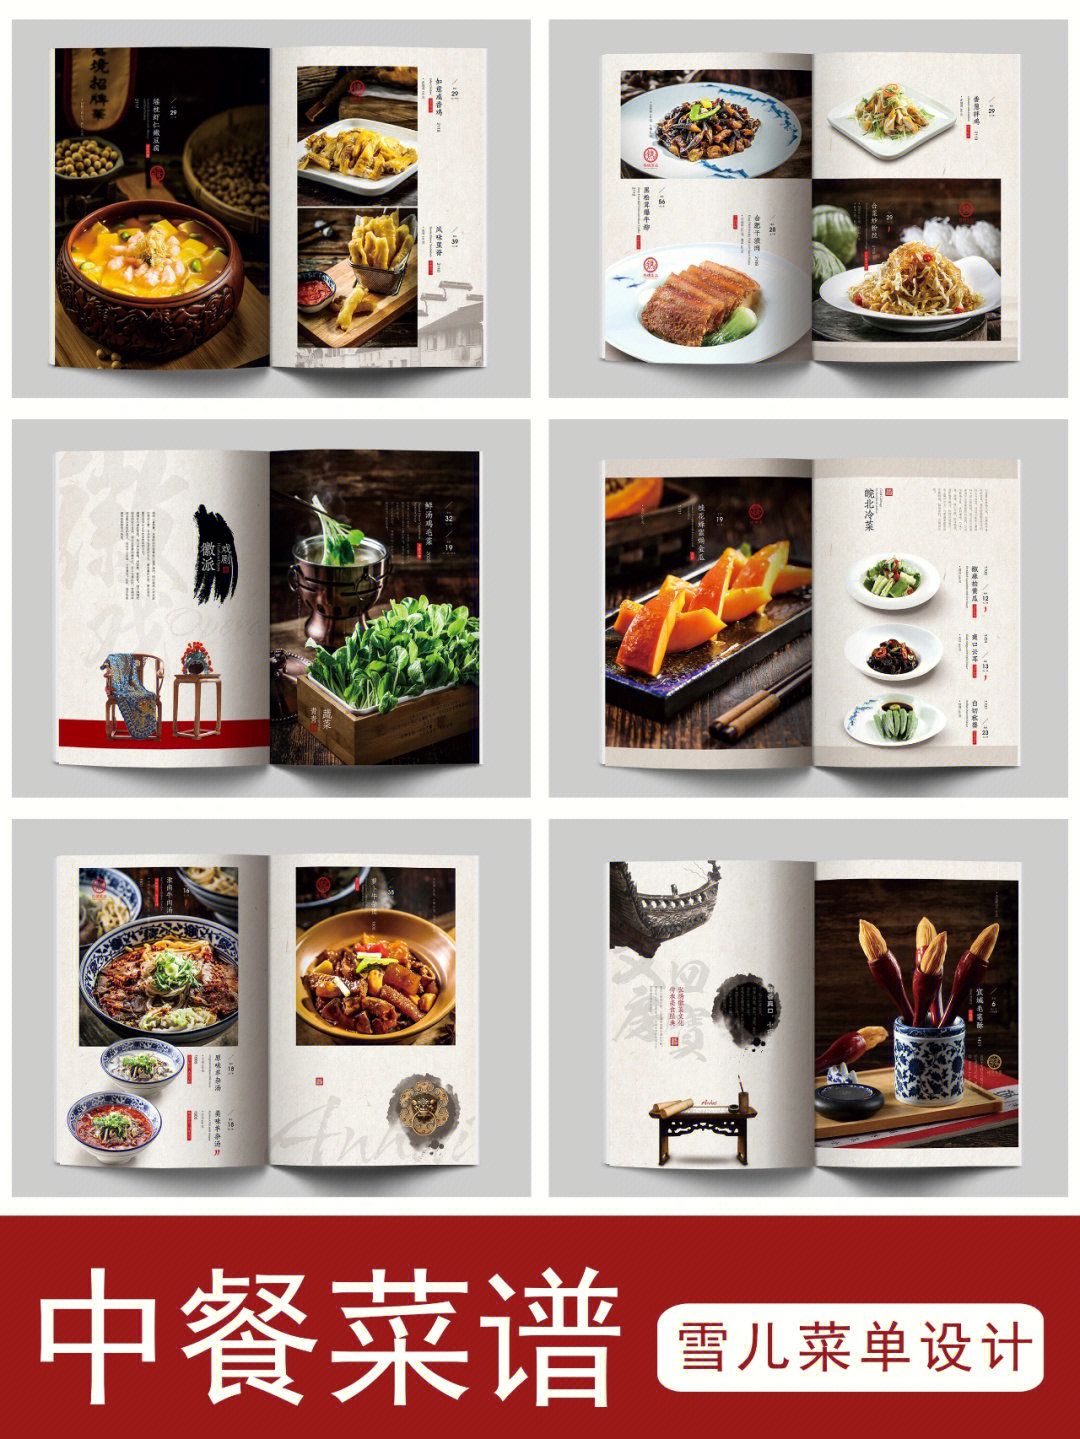 菜谱设计#高端菜谱设计#菜单设计中餐#中餐菜单设计